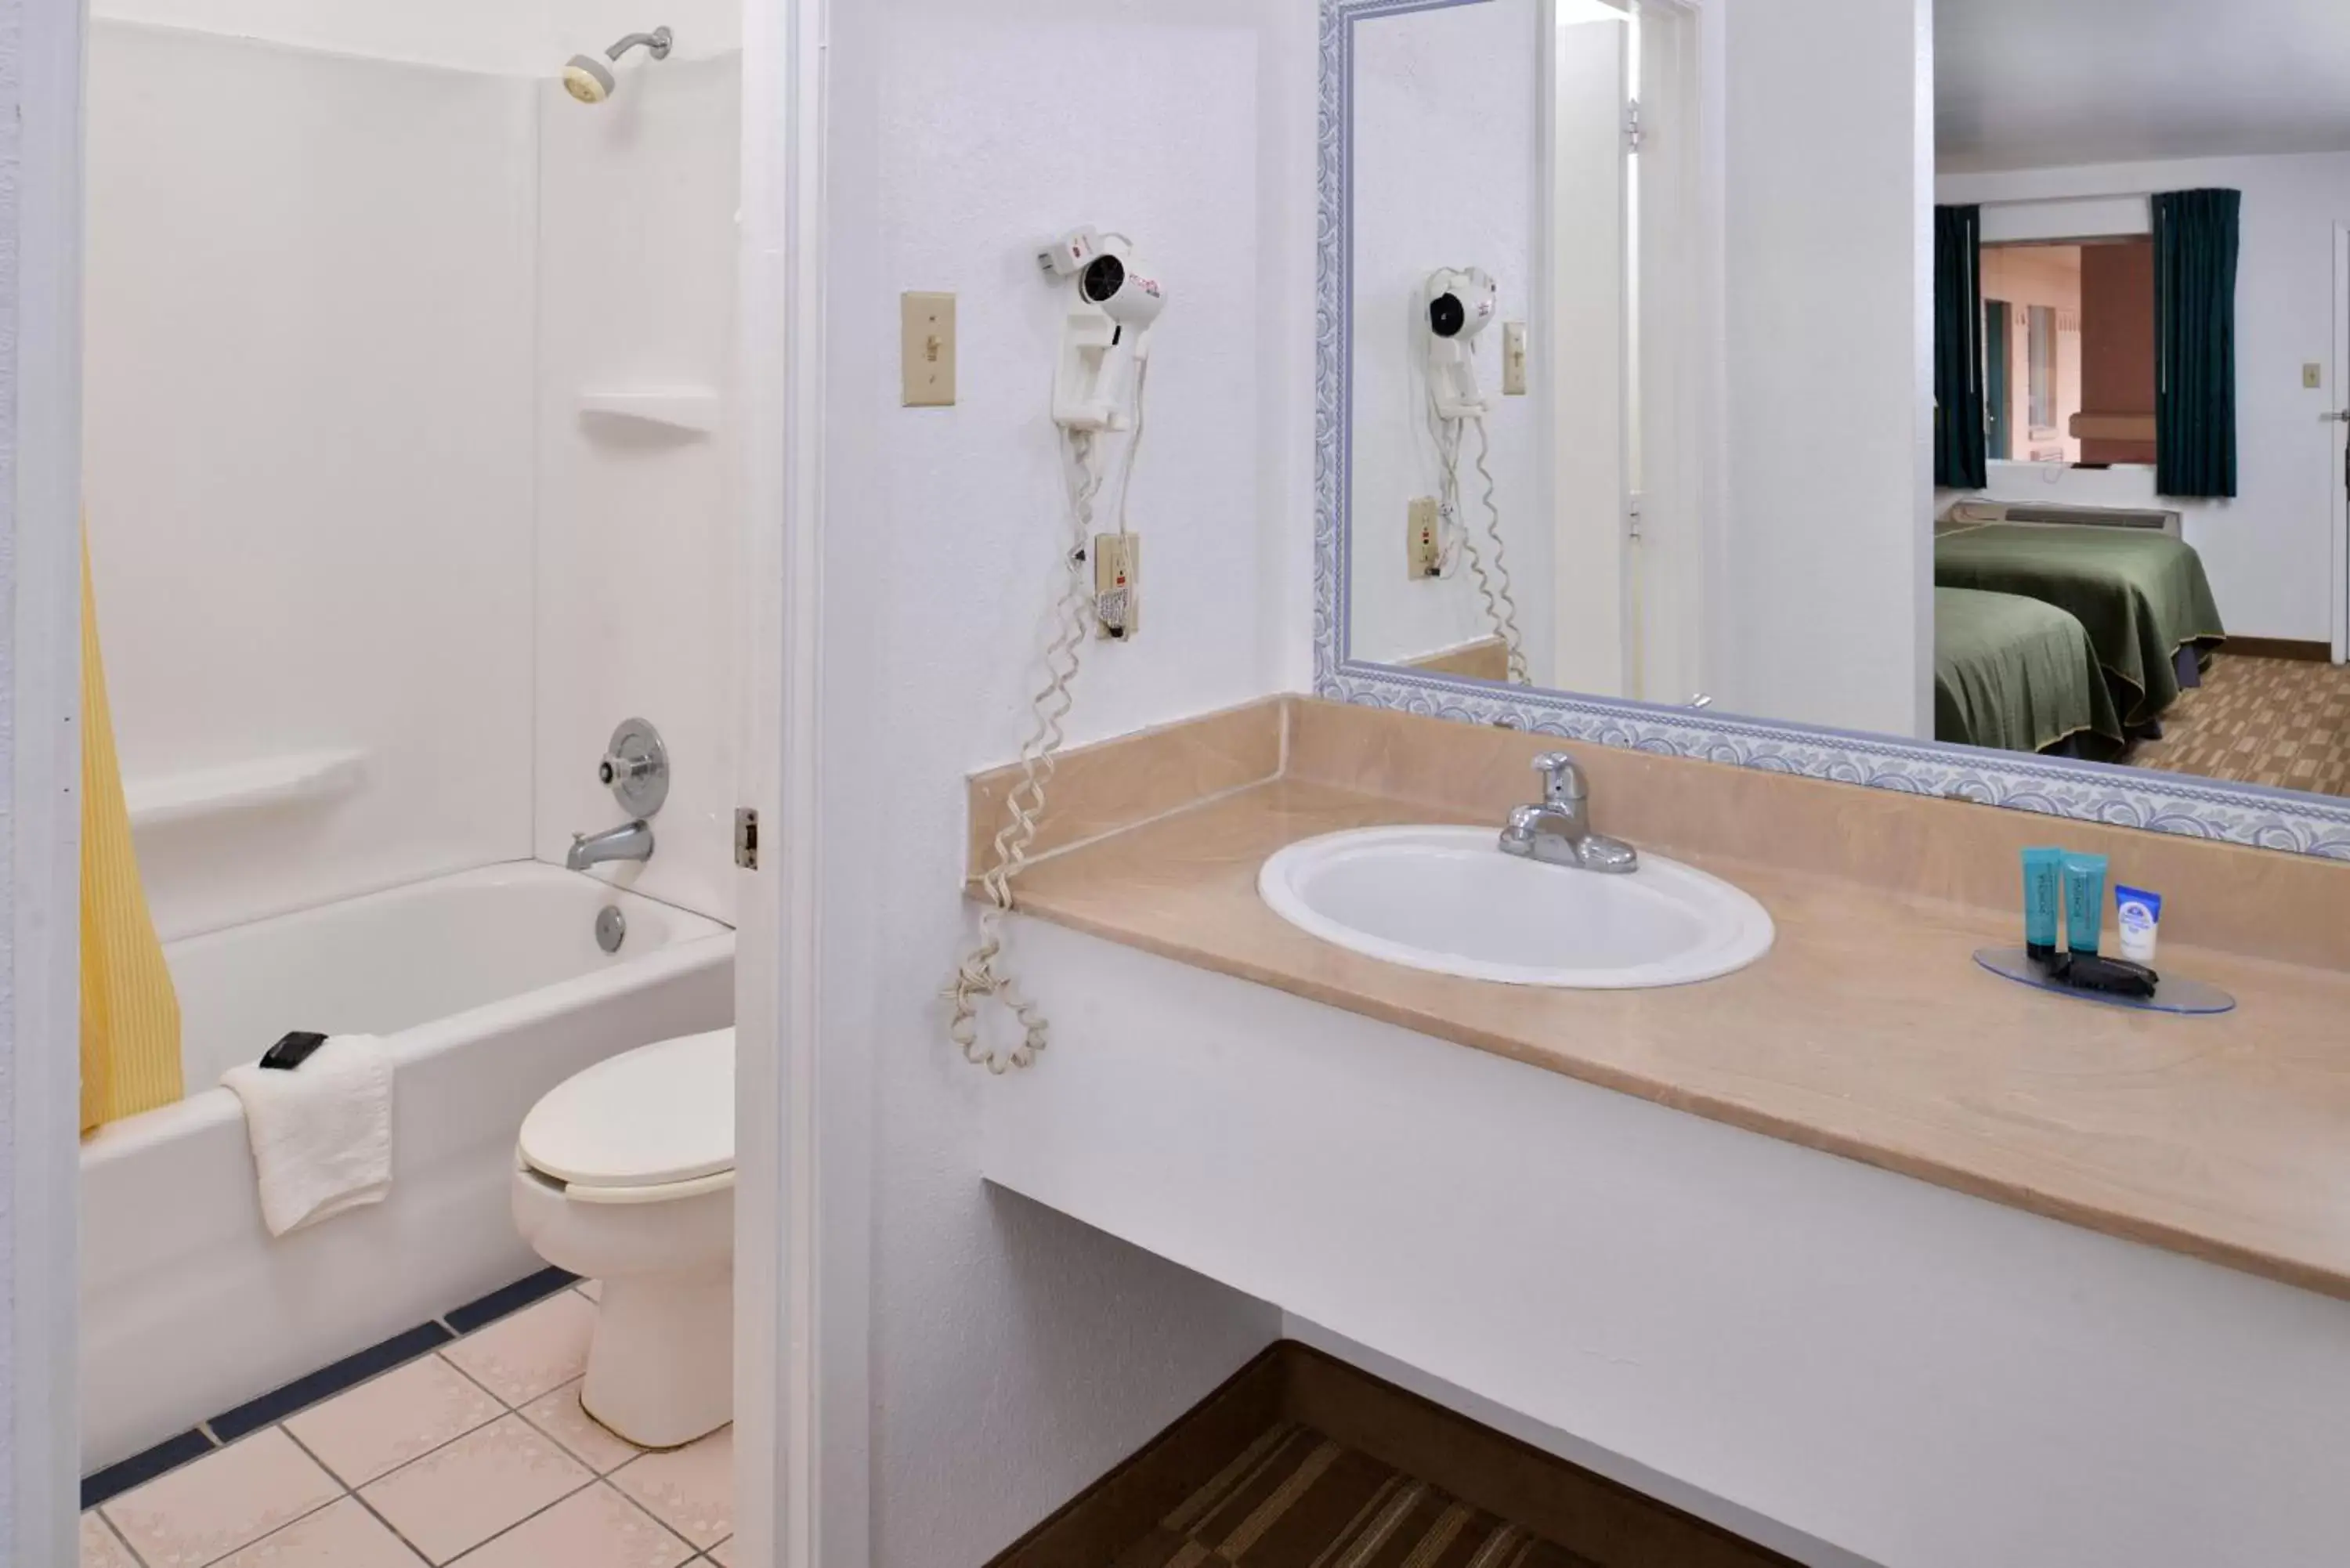 Bedroom, Bathroom in Americas Best Value Inn Clute